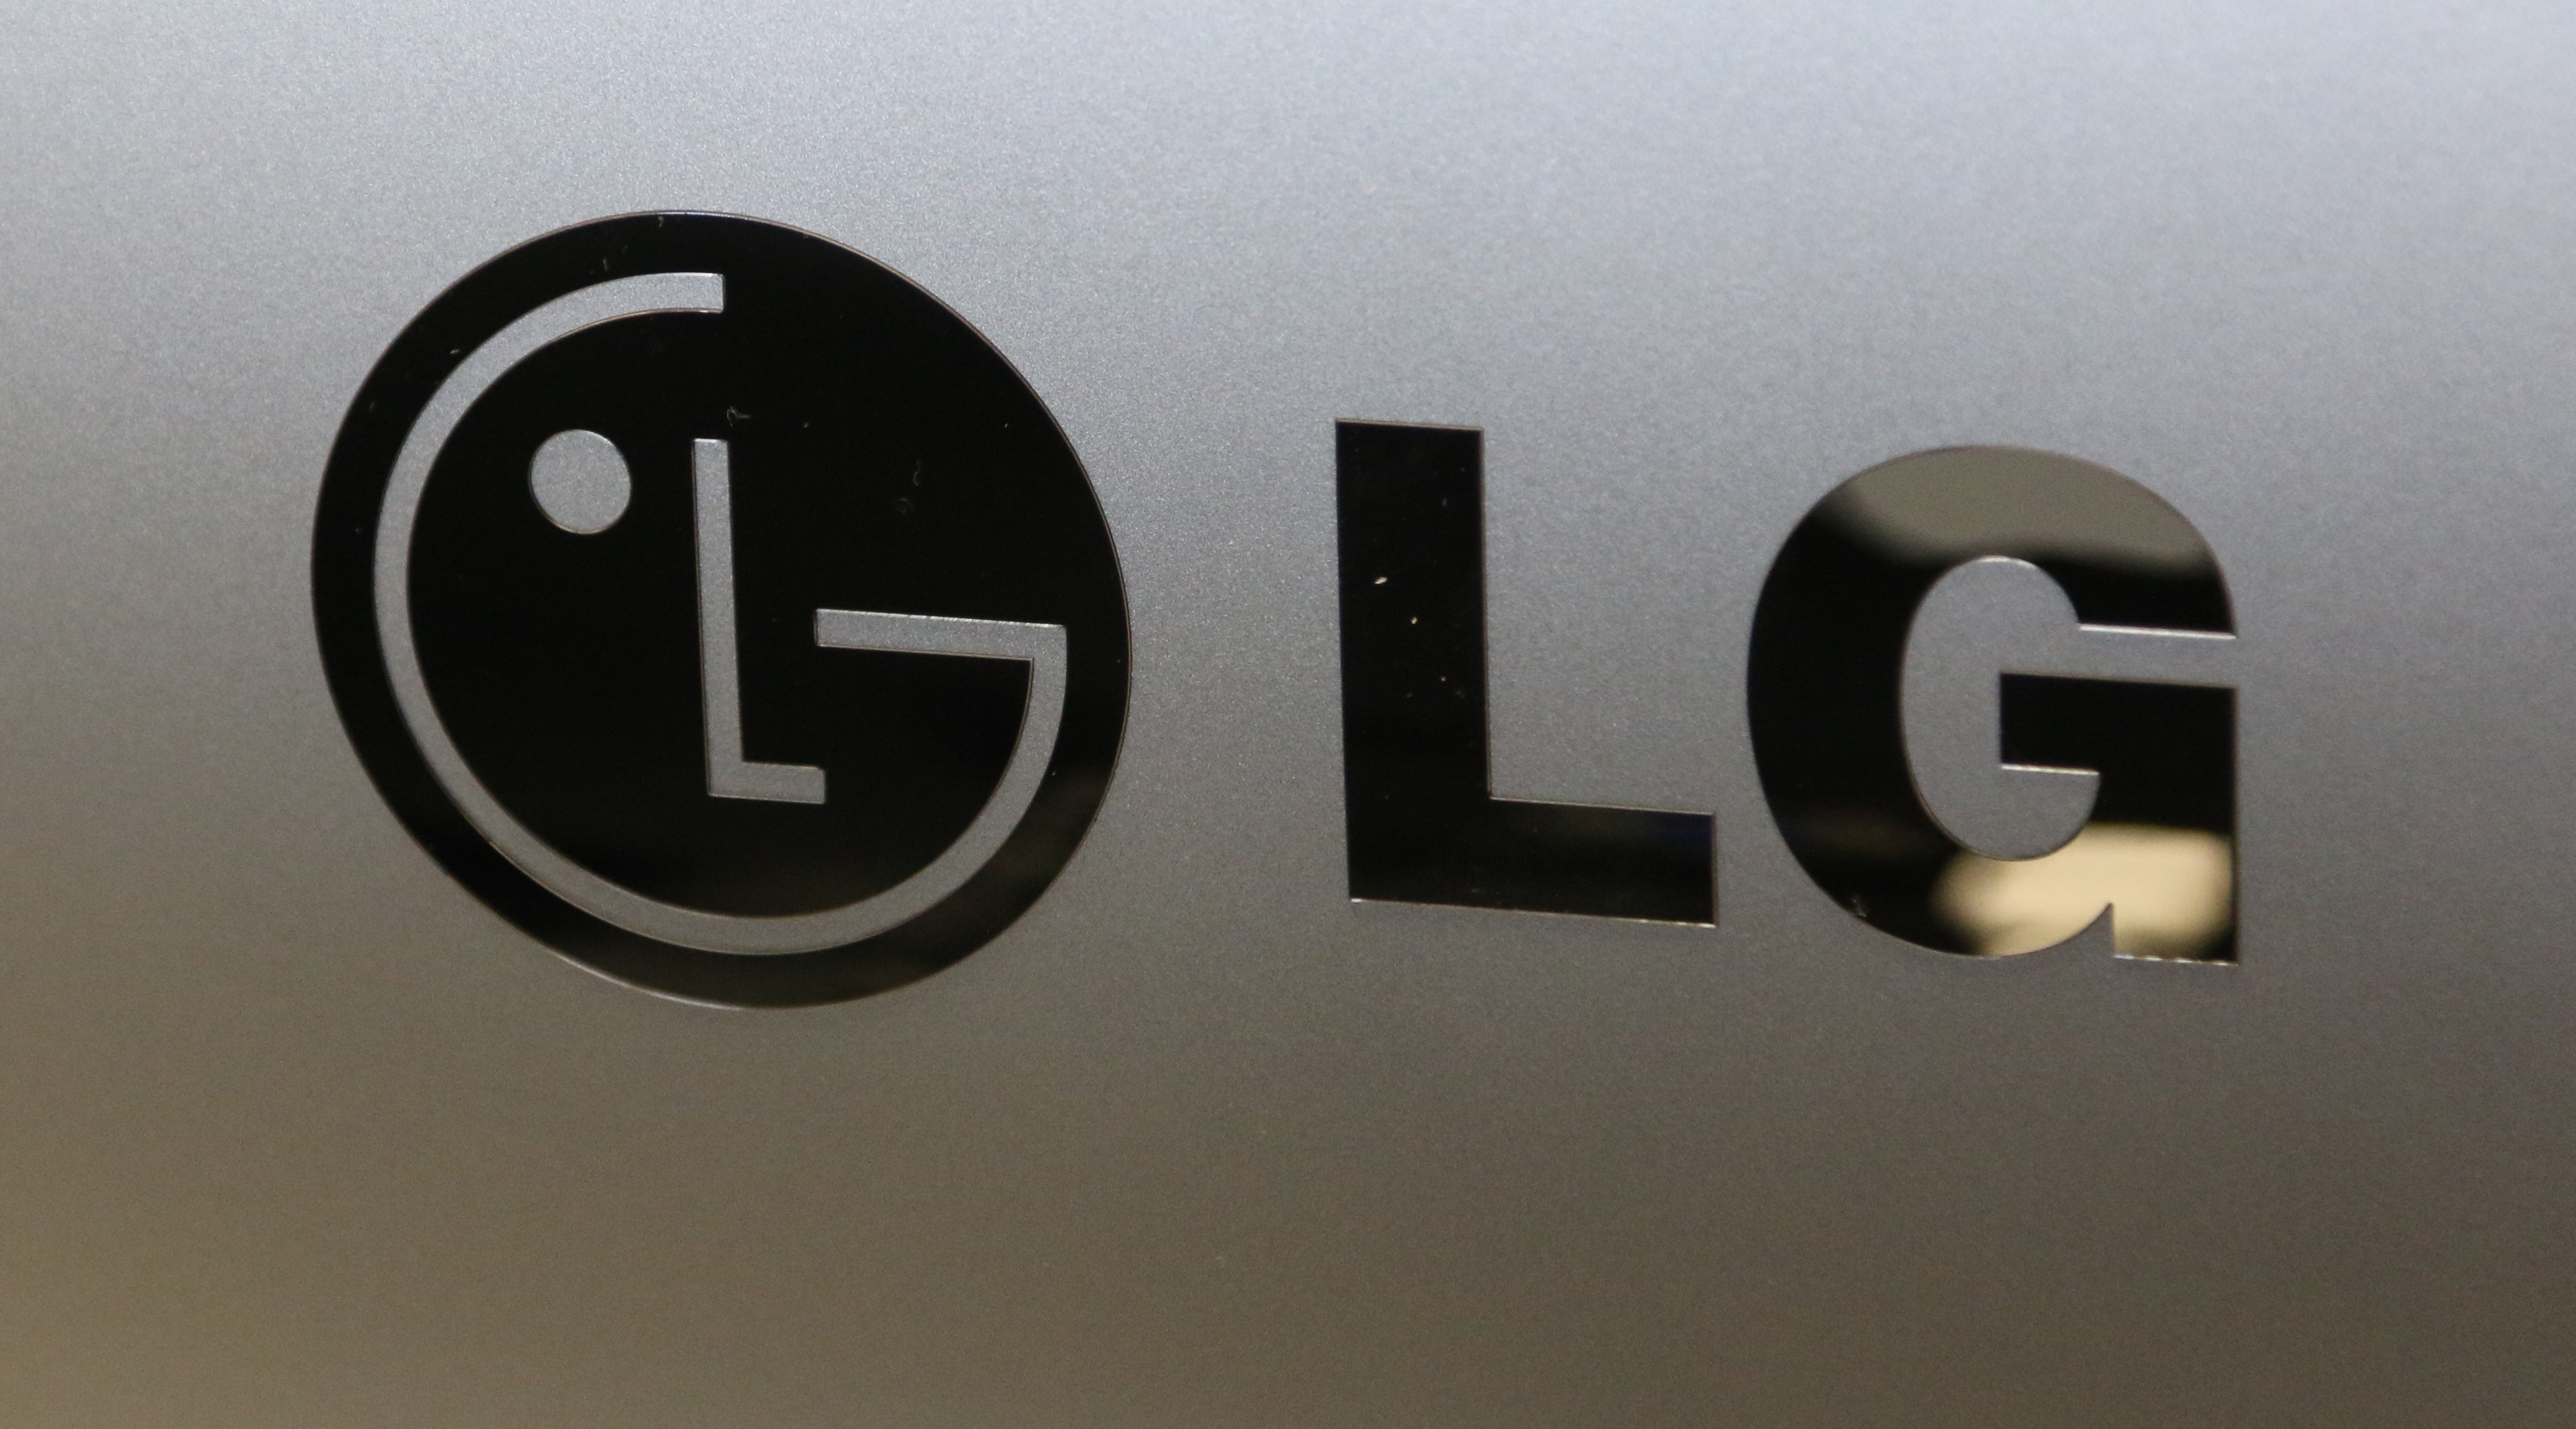 LG-logo-Final